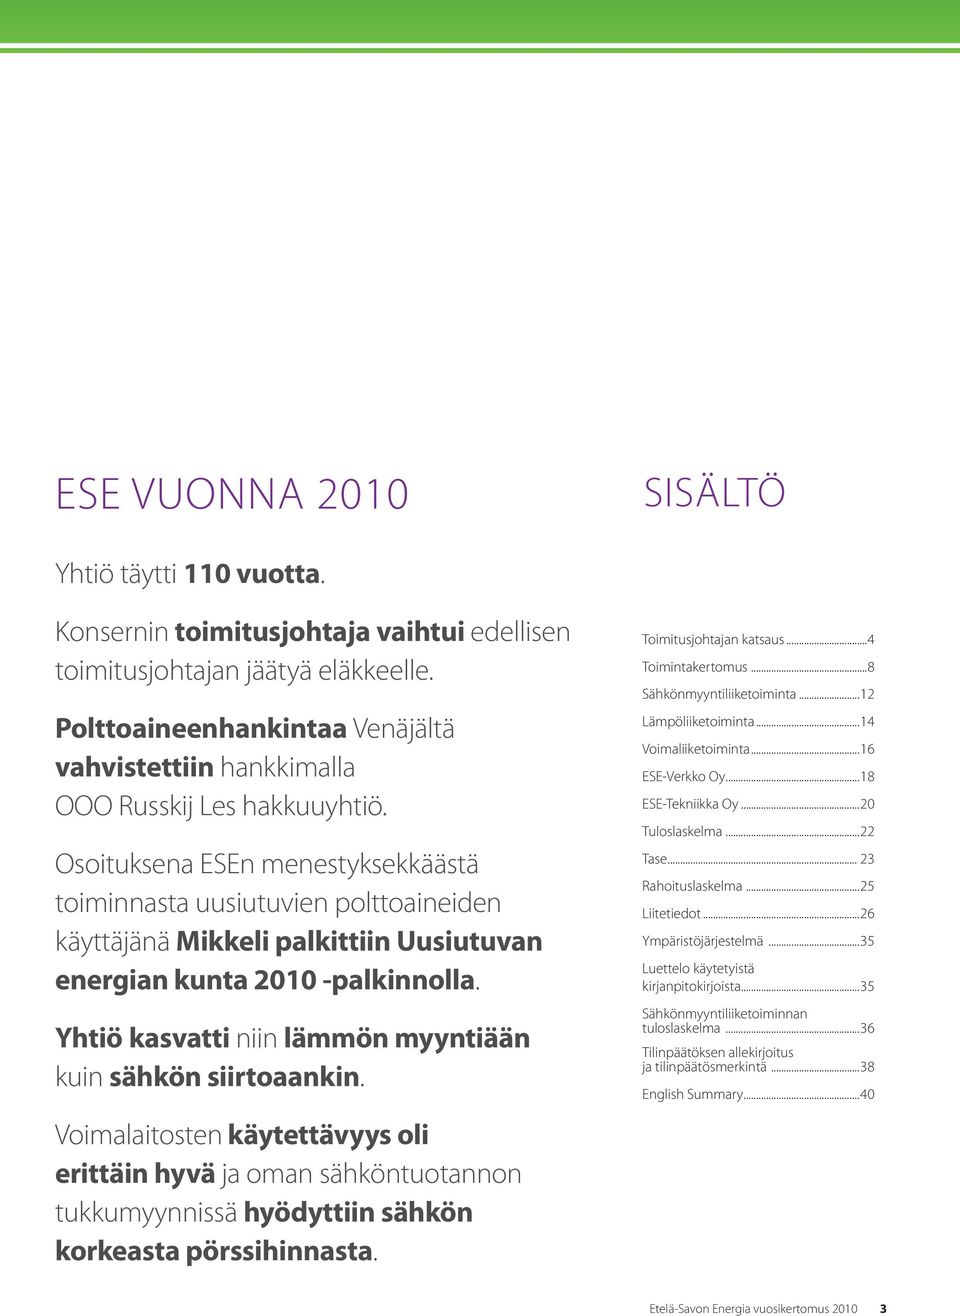 Osoituksena ESEn menestyksekkäästä toiminnasta uusiutuvien polttoaineiden käyttäjänä Mikkeli palkittiin Uusiutuvan energian kunta 2010 -palkinnolla.